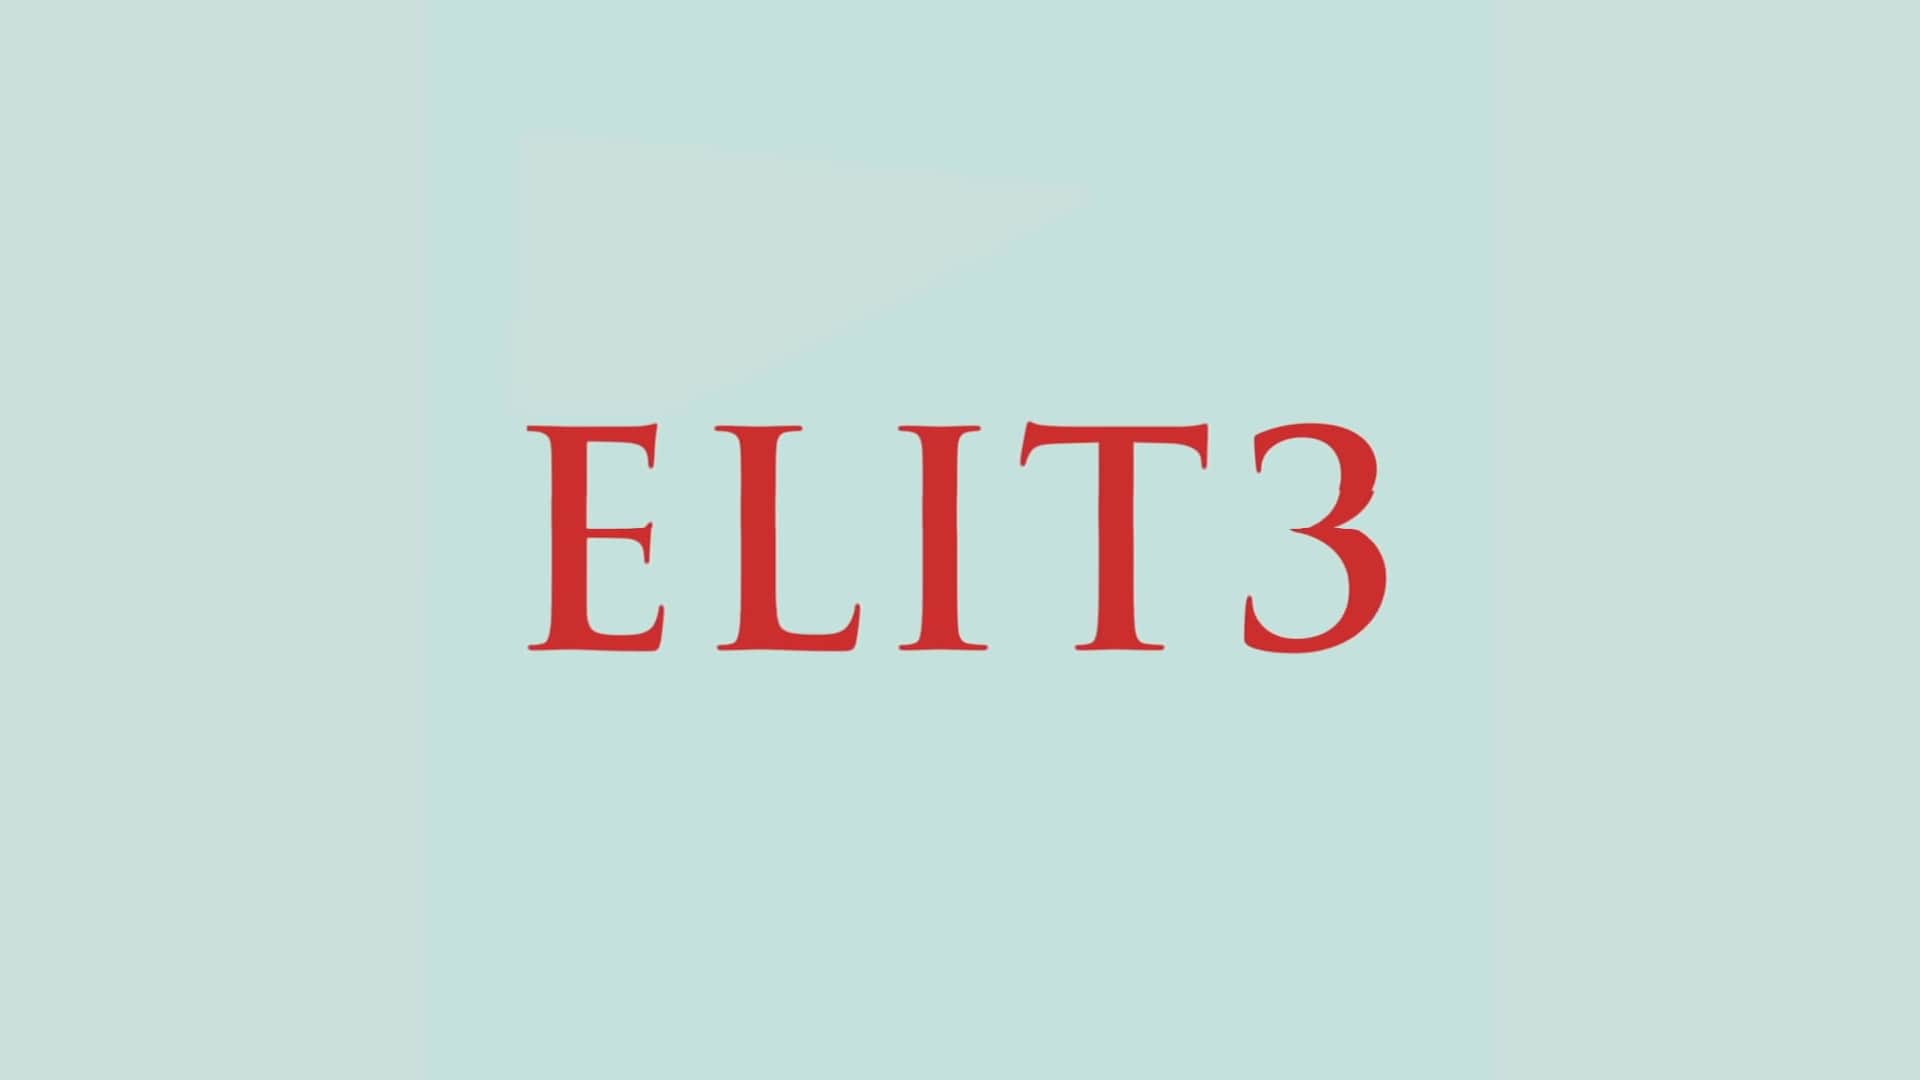 Elite Season 3 Netflix Trailer, Netflix Drama Series, Netflix Crime Series, Netflix Thrillers, Coming to Netflix in March 2020